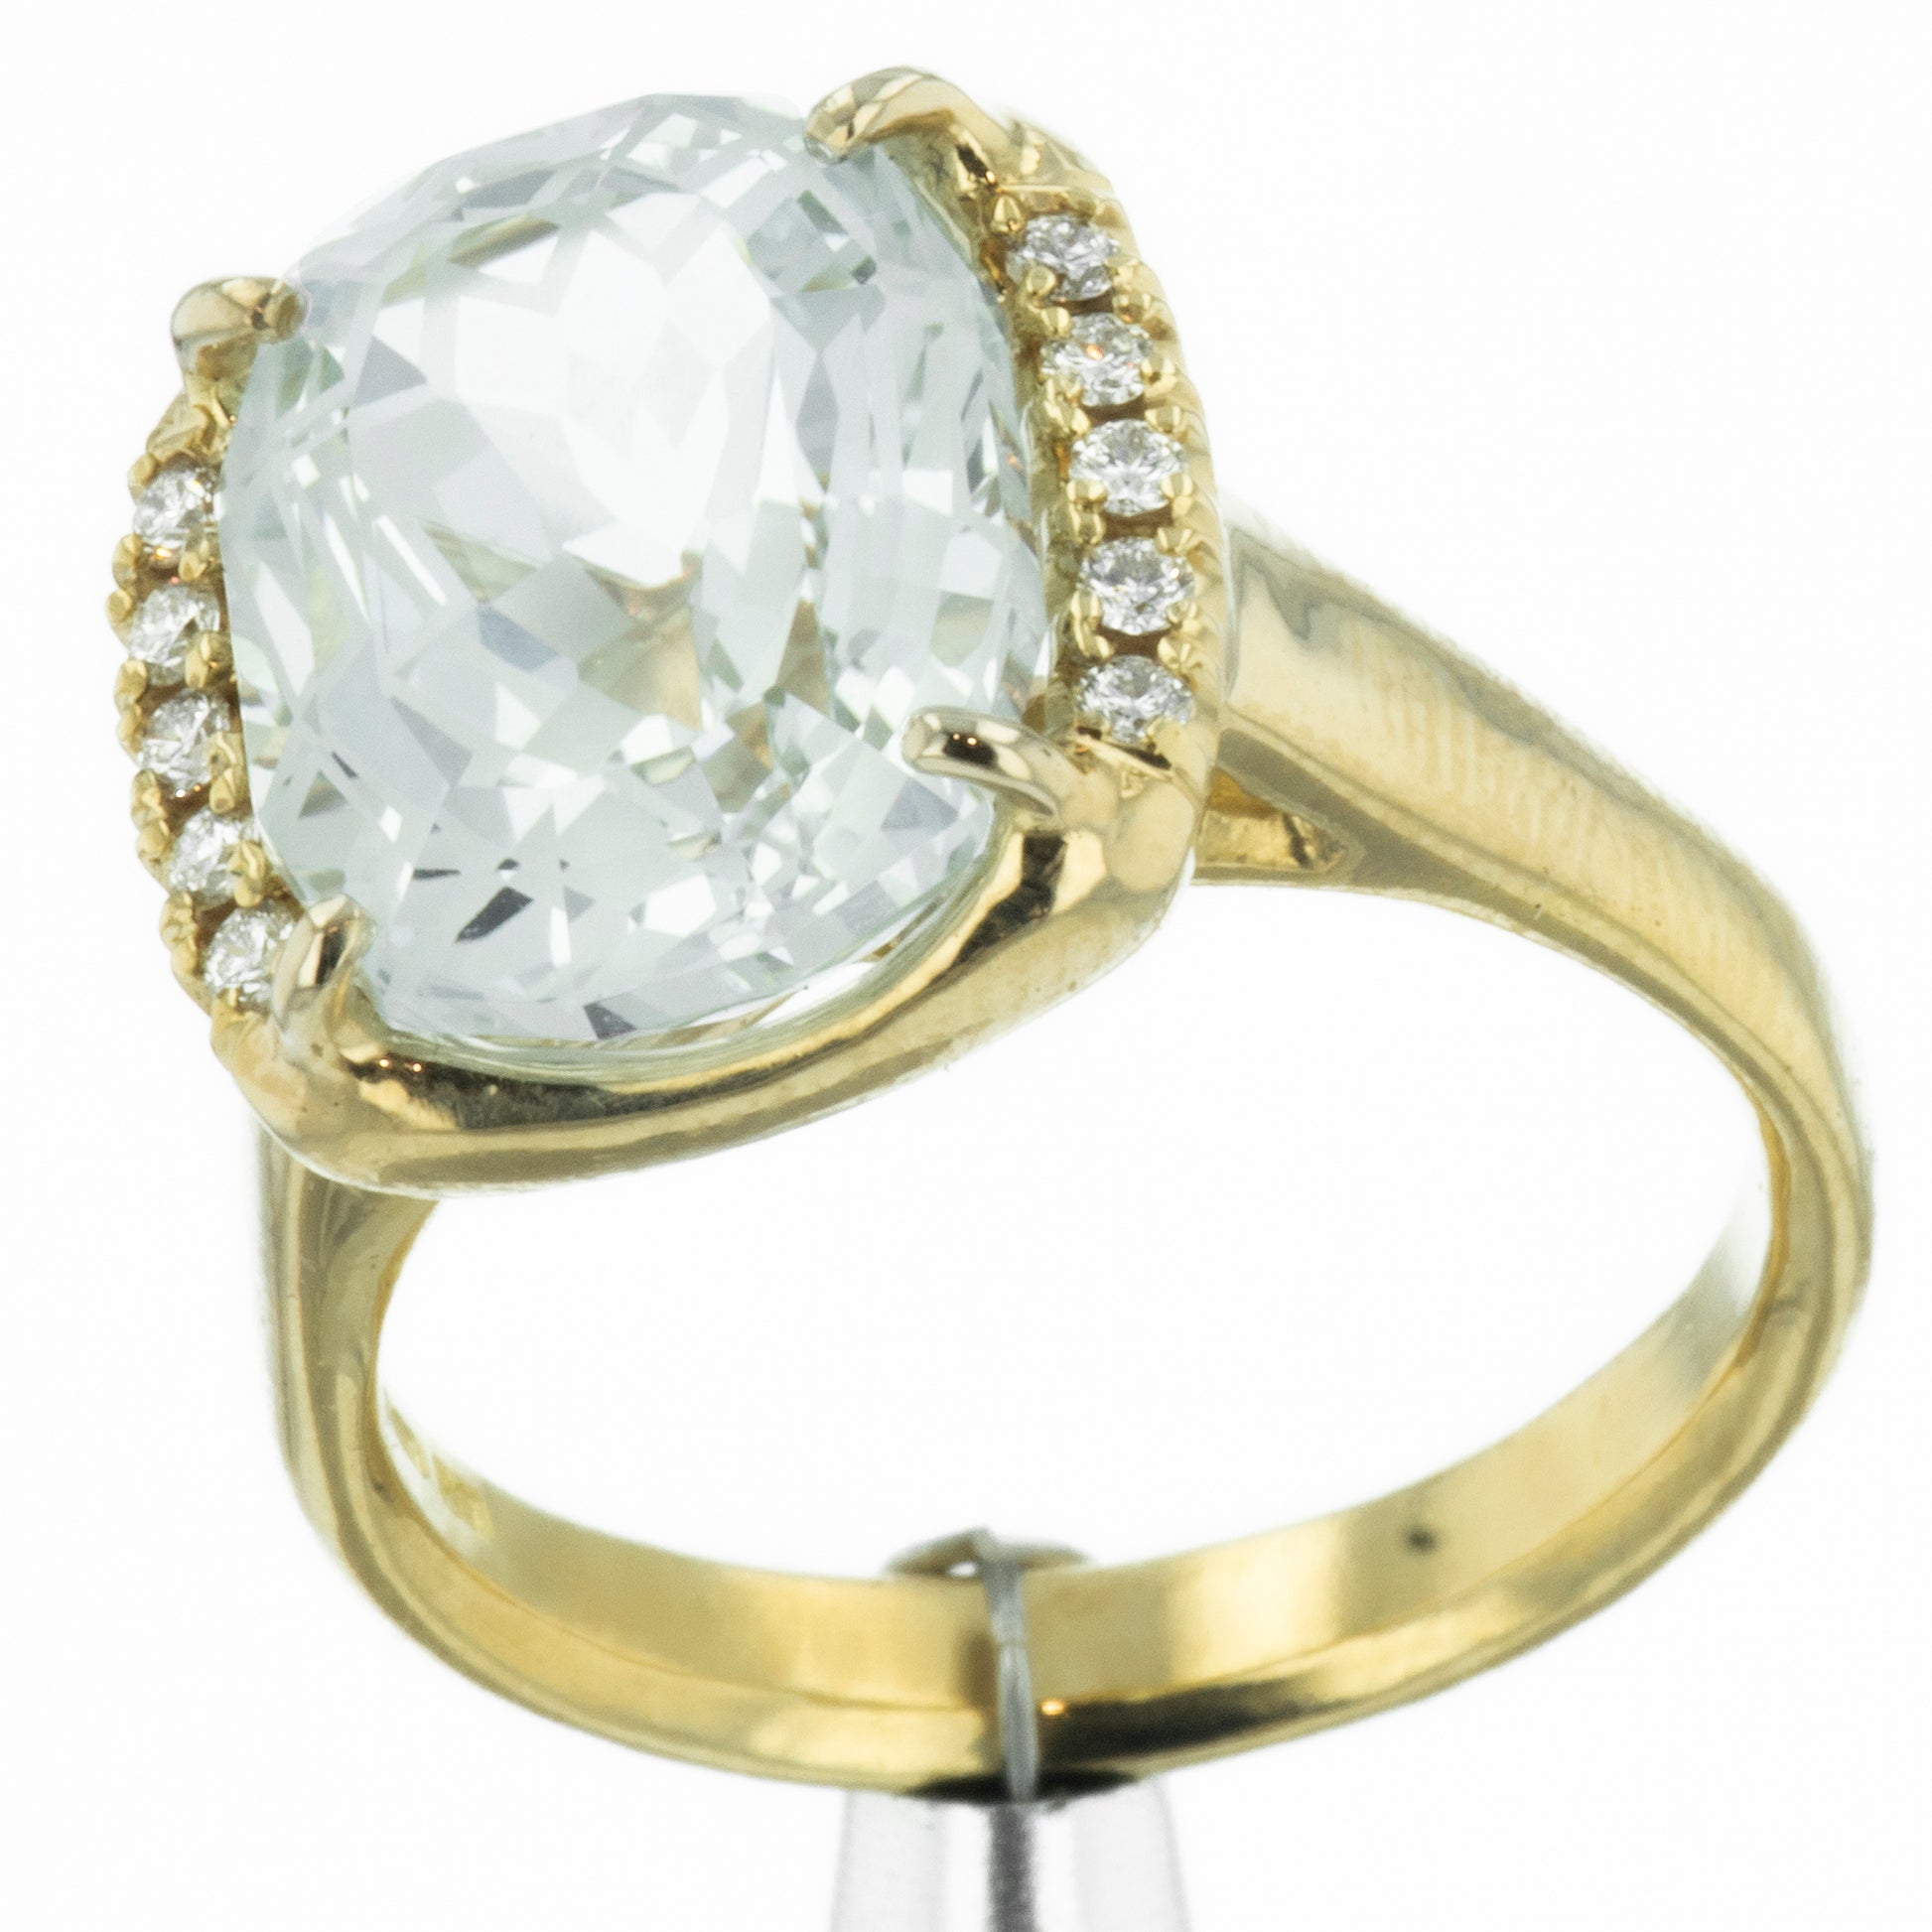 Topaz engagement ring